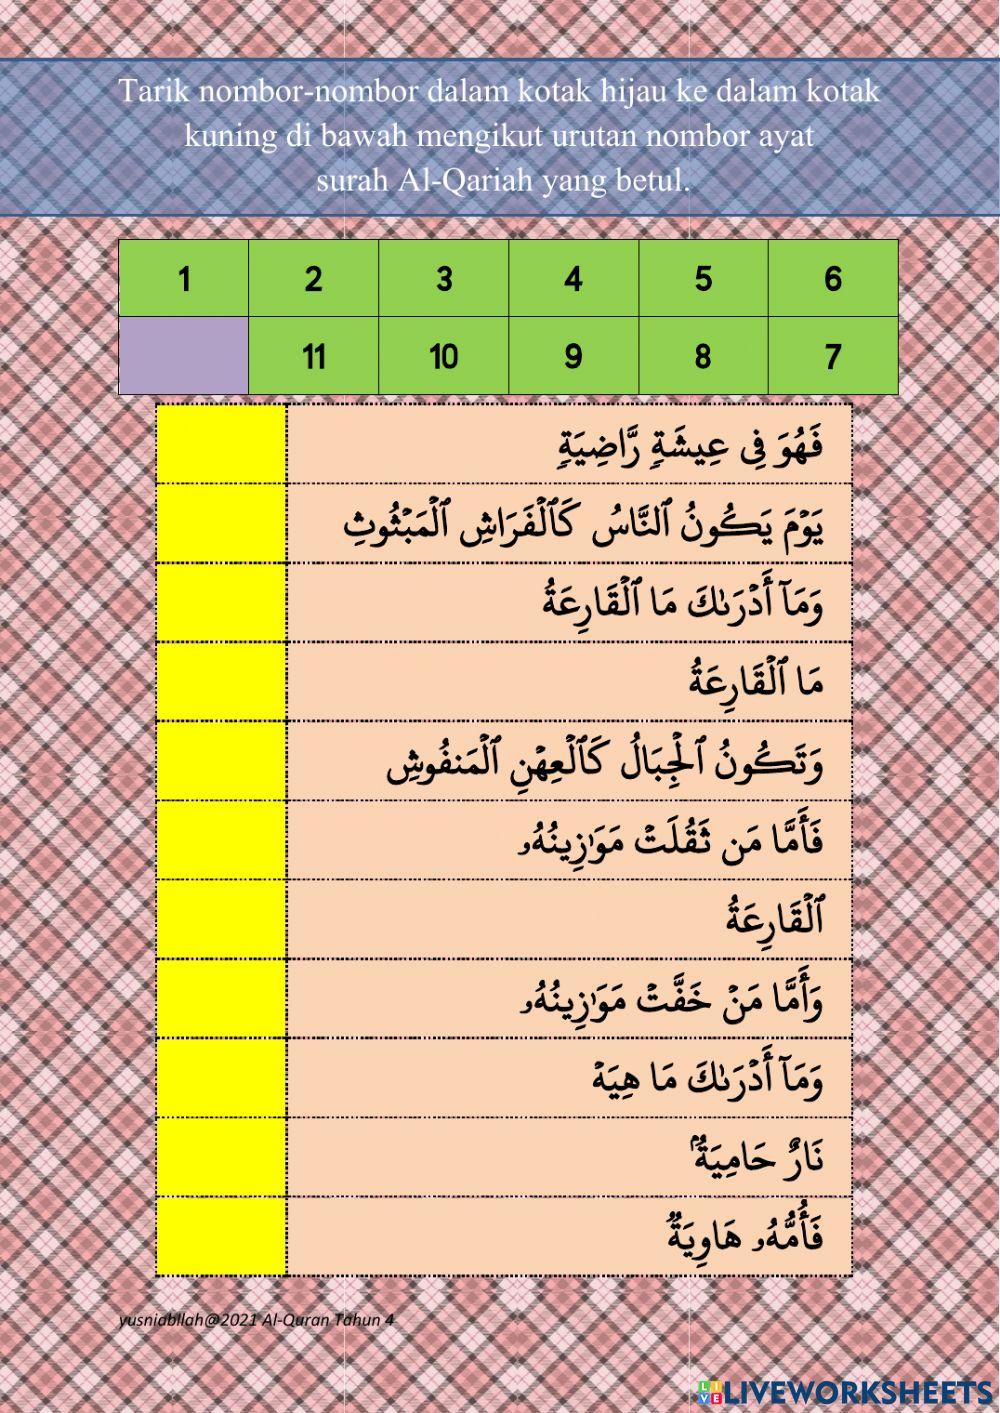 Surah al-qariah ayat 1 hingga 11